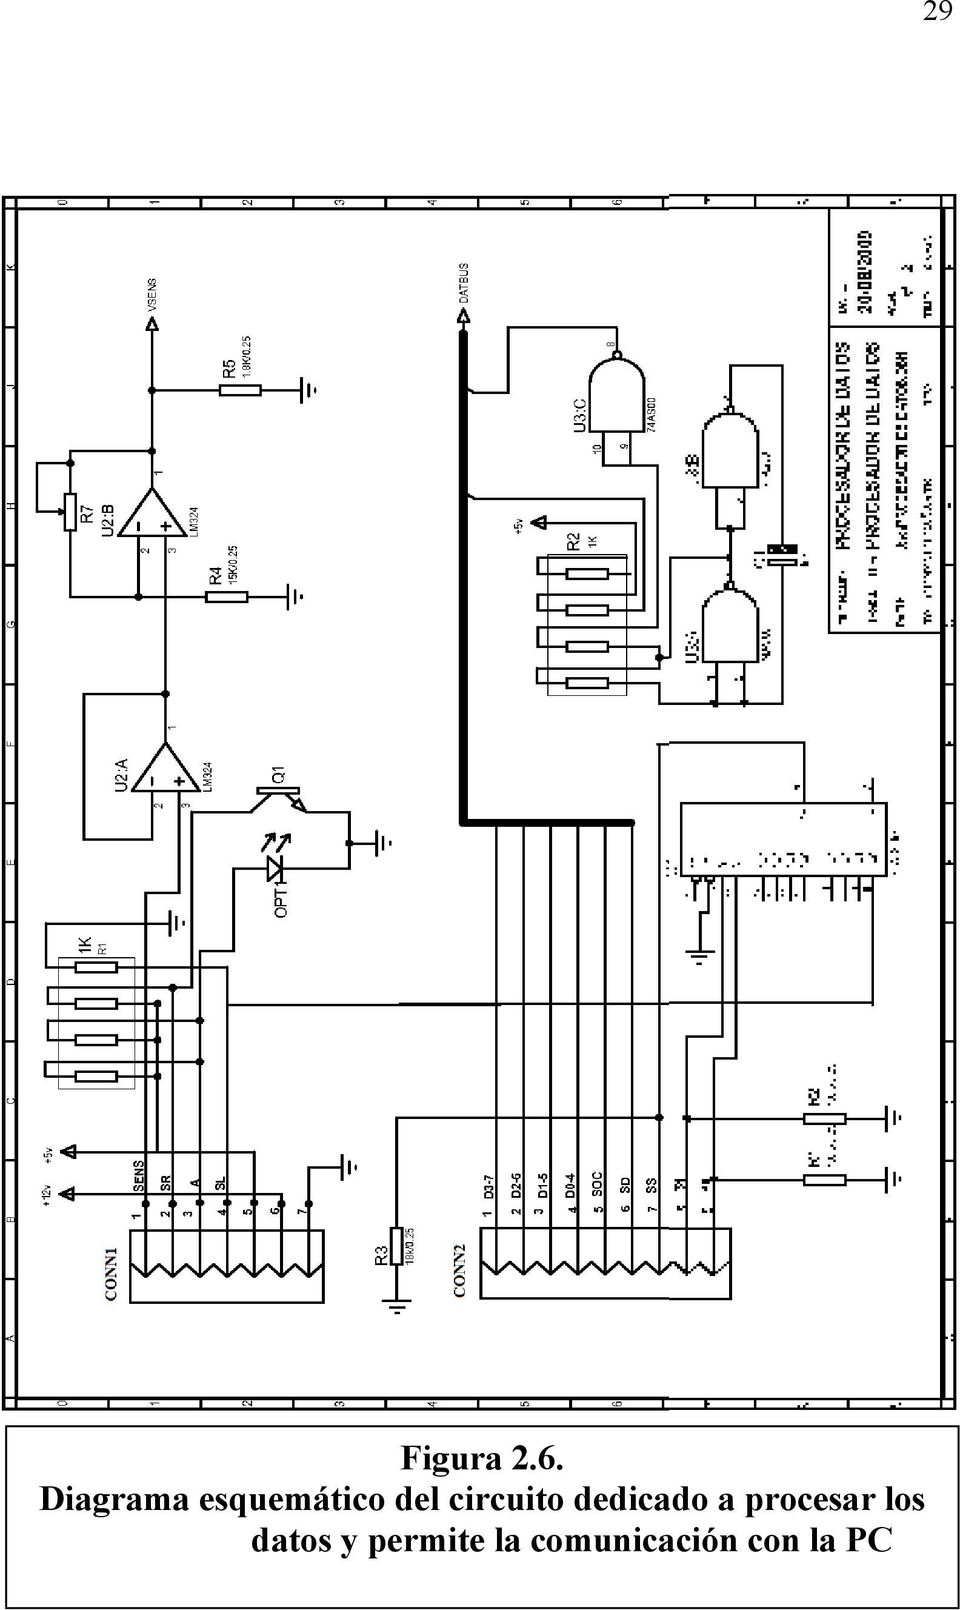 circuito dedicado a procesar